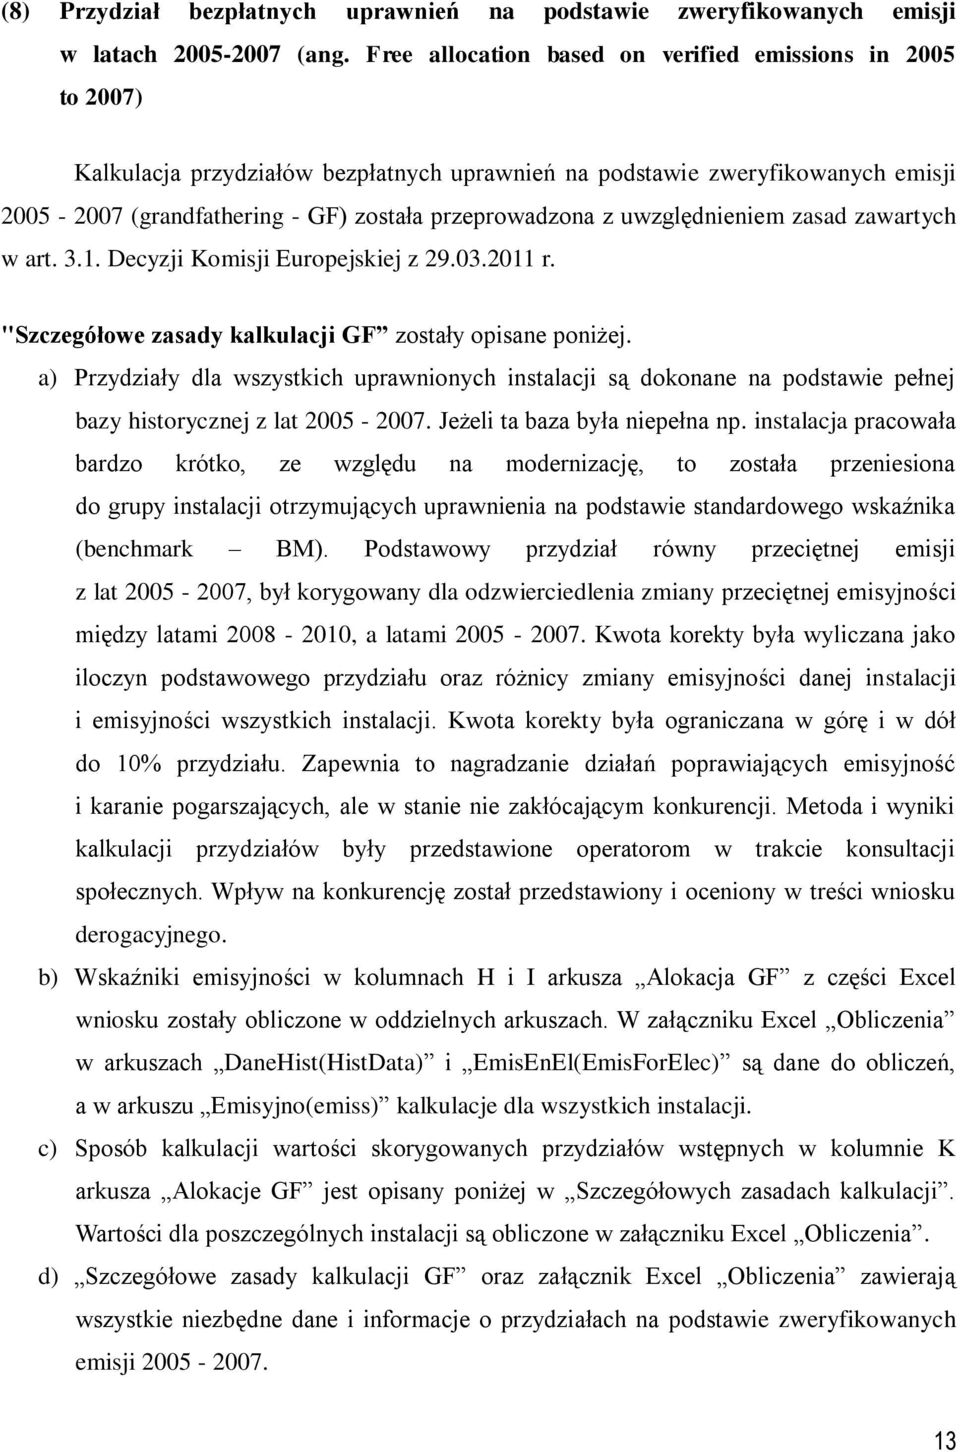 zasad zawartych w art. 3.1. Decyzj Komsj Europejskej z 29.03.2011 r. "Szczegółowe zasady kalkulacj GF zostały opsane ponżej.